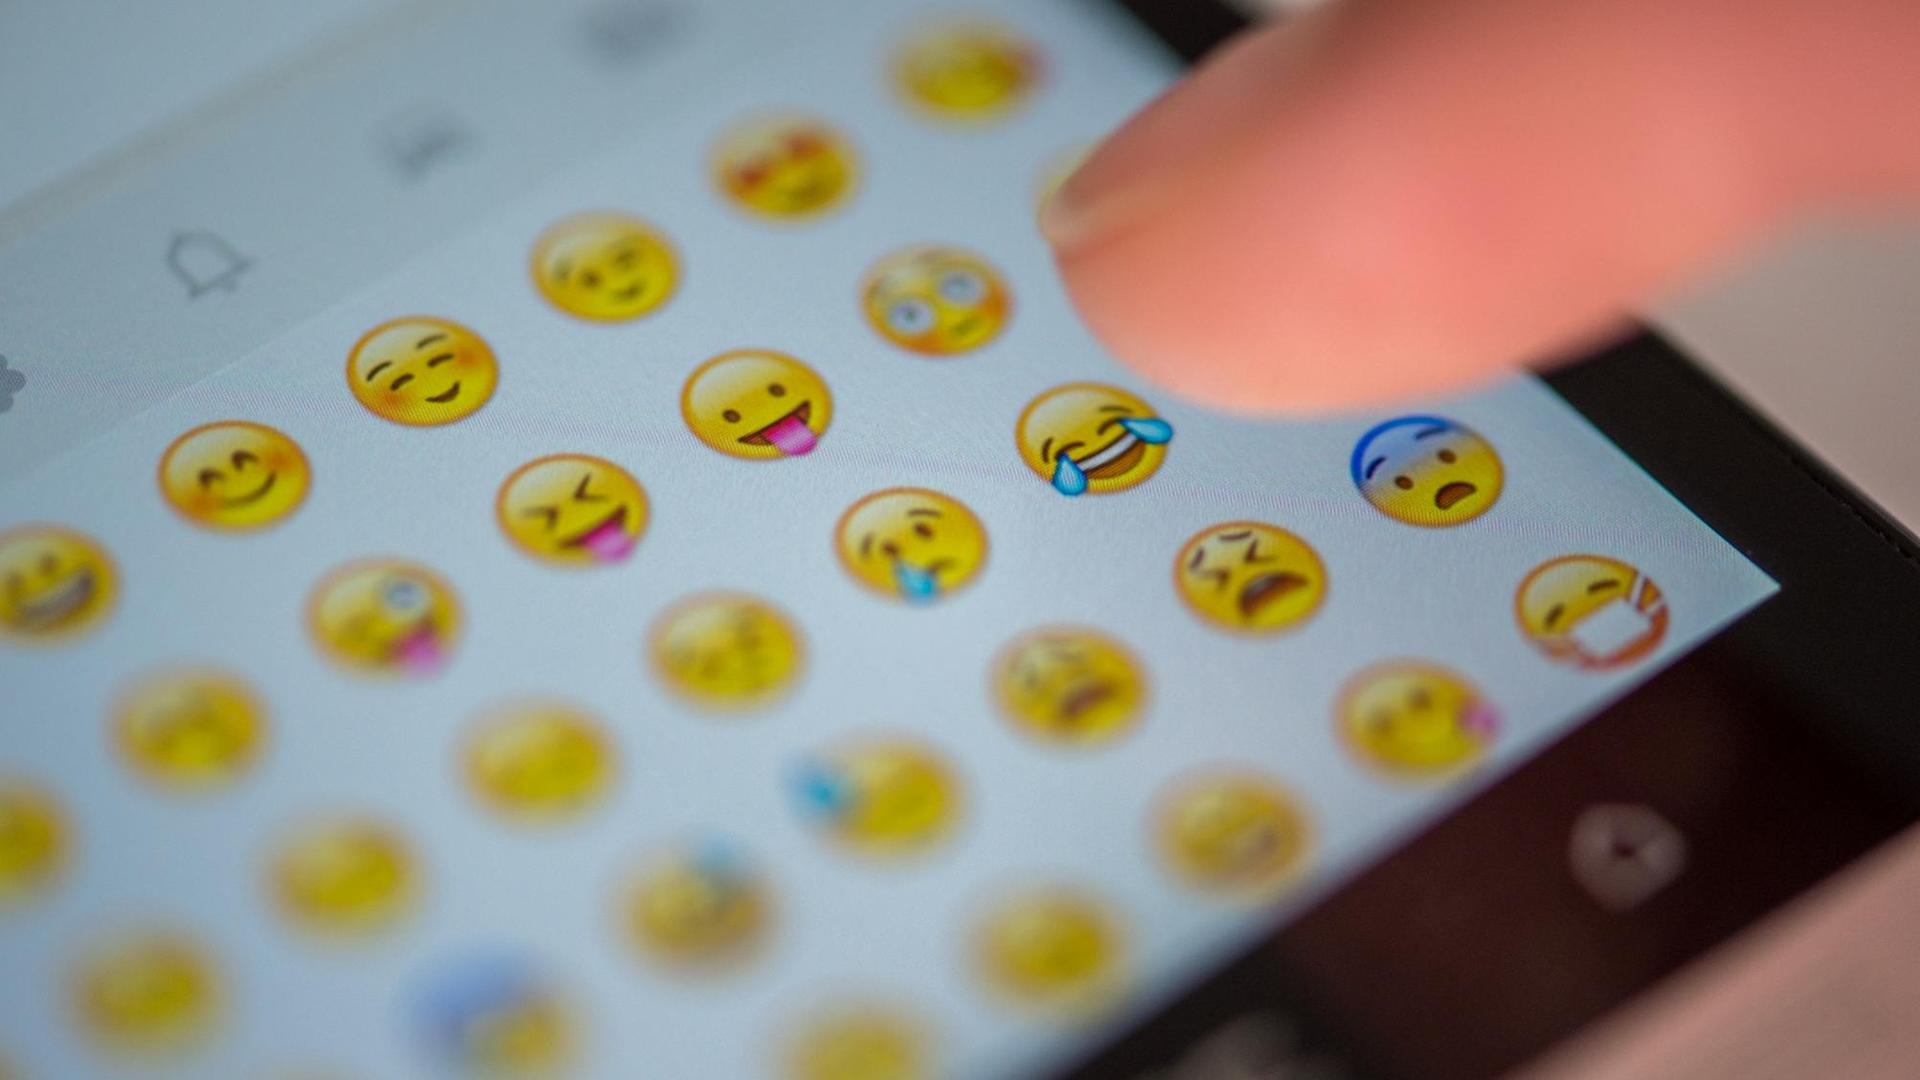 Eine Frau tippt auf den Bild-Schirm von einem Handy. Man kann viele Smiley-Emojis sehen.